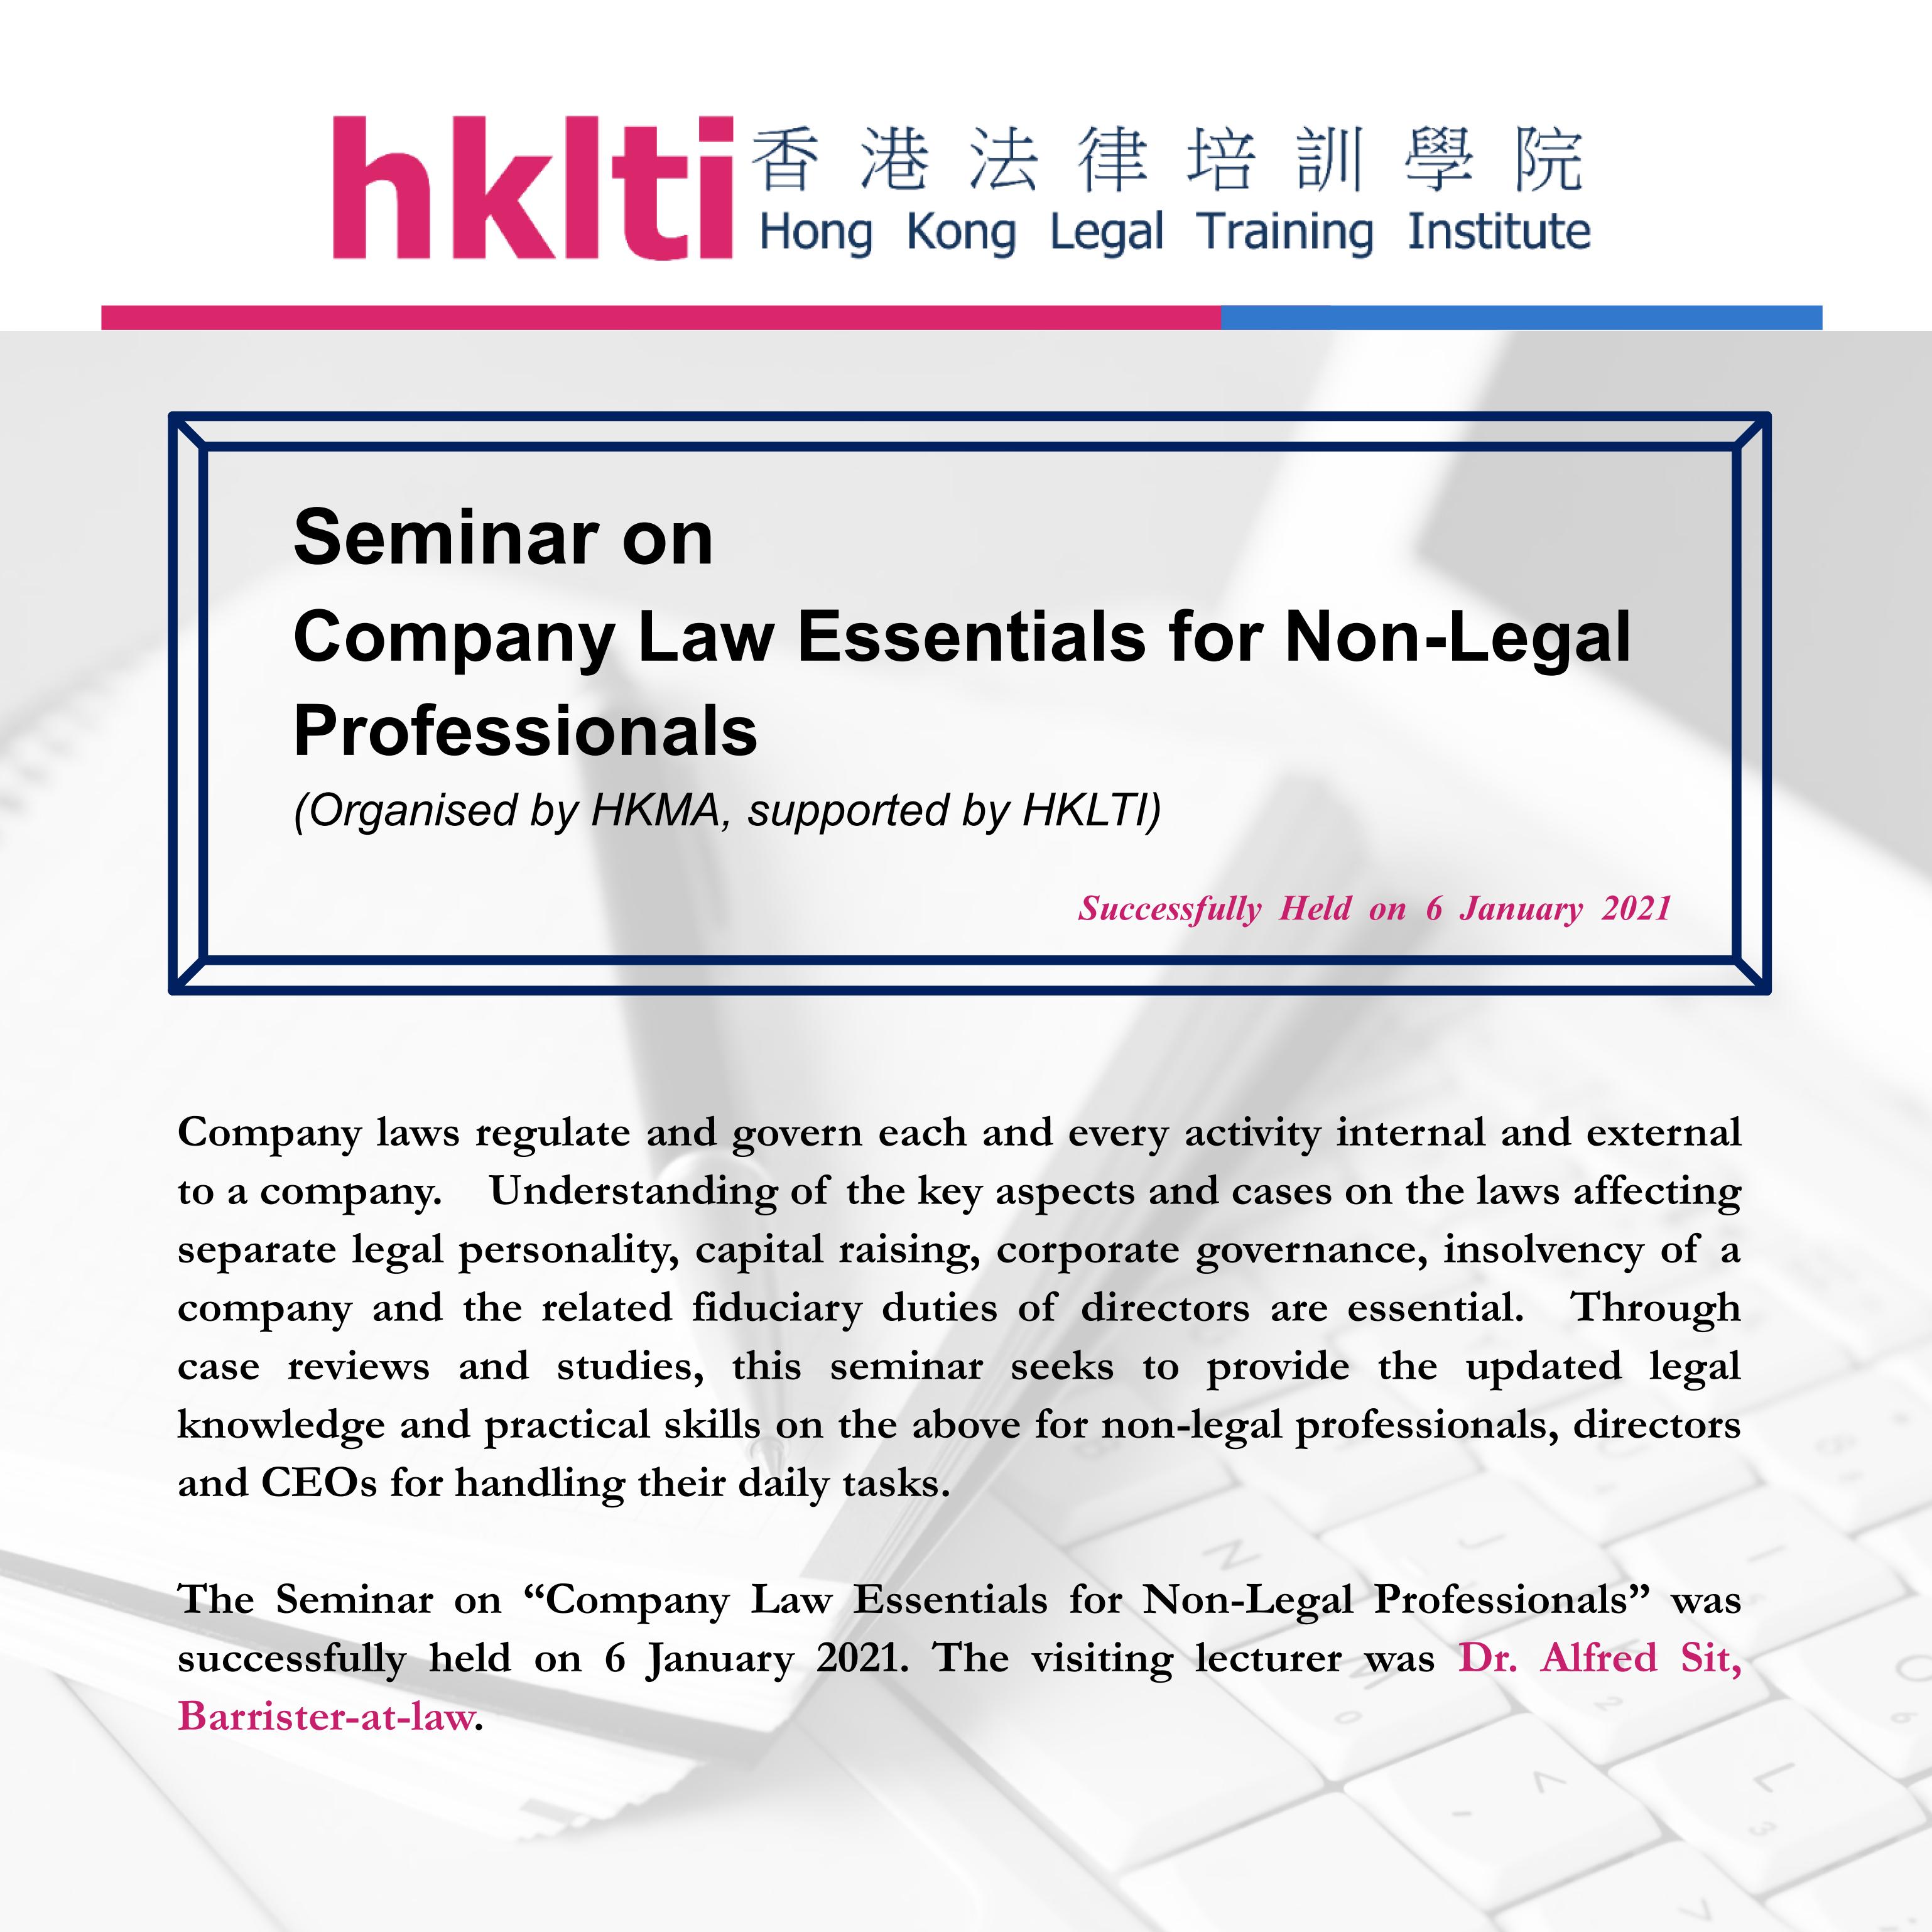 hklti hkma company law essentials for non legal professionals seminar report 20210106